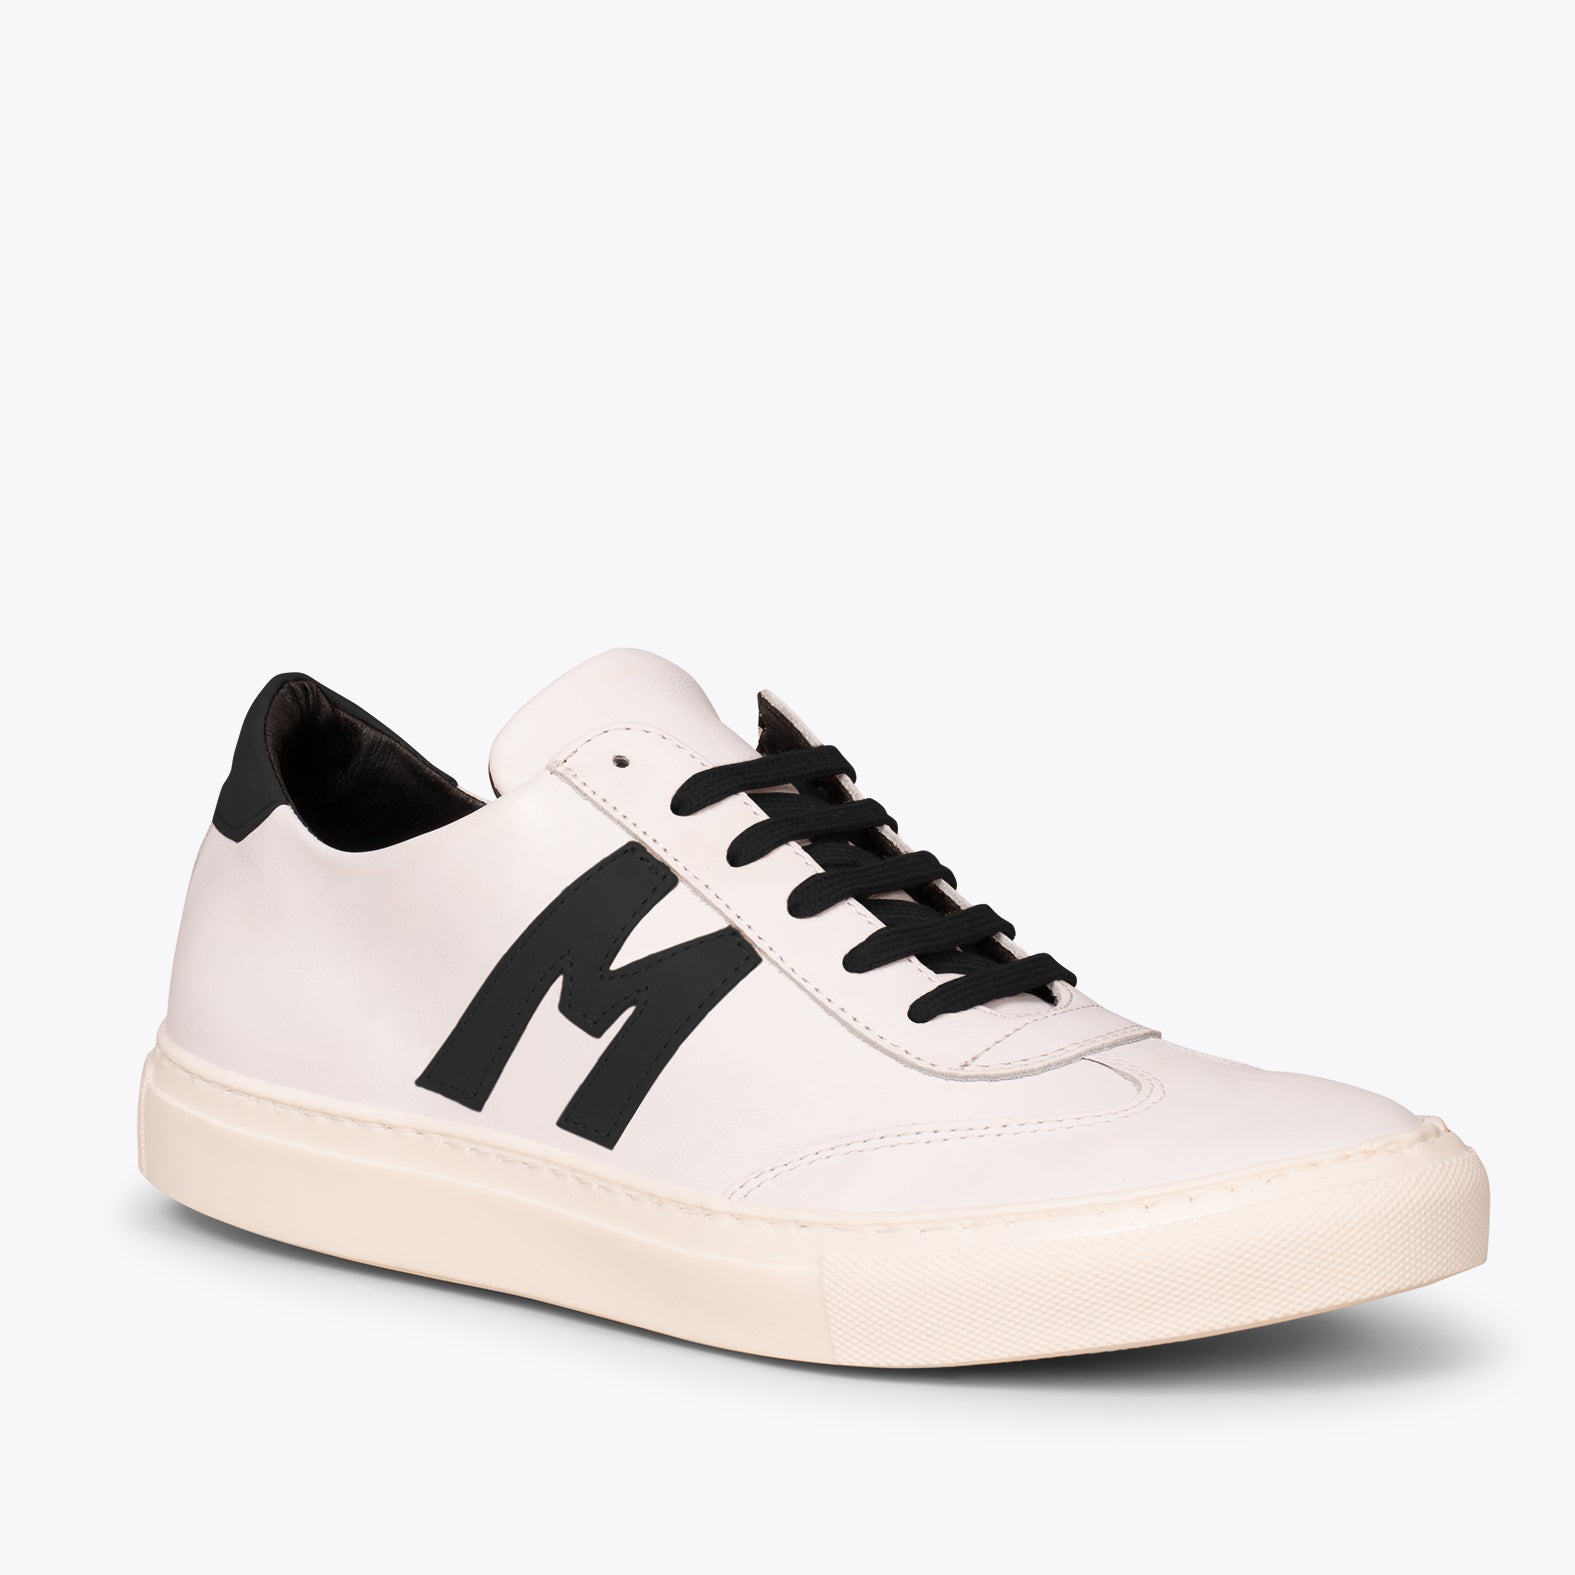 MONACO – WHITE & BLACK casual sneaker for men